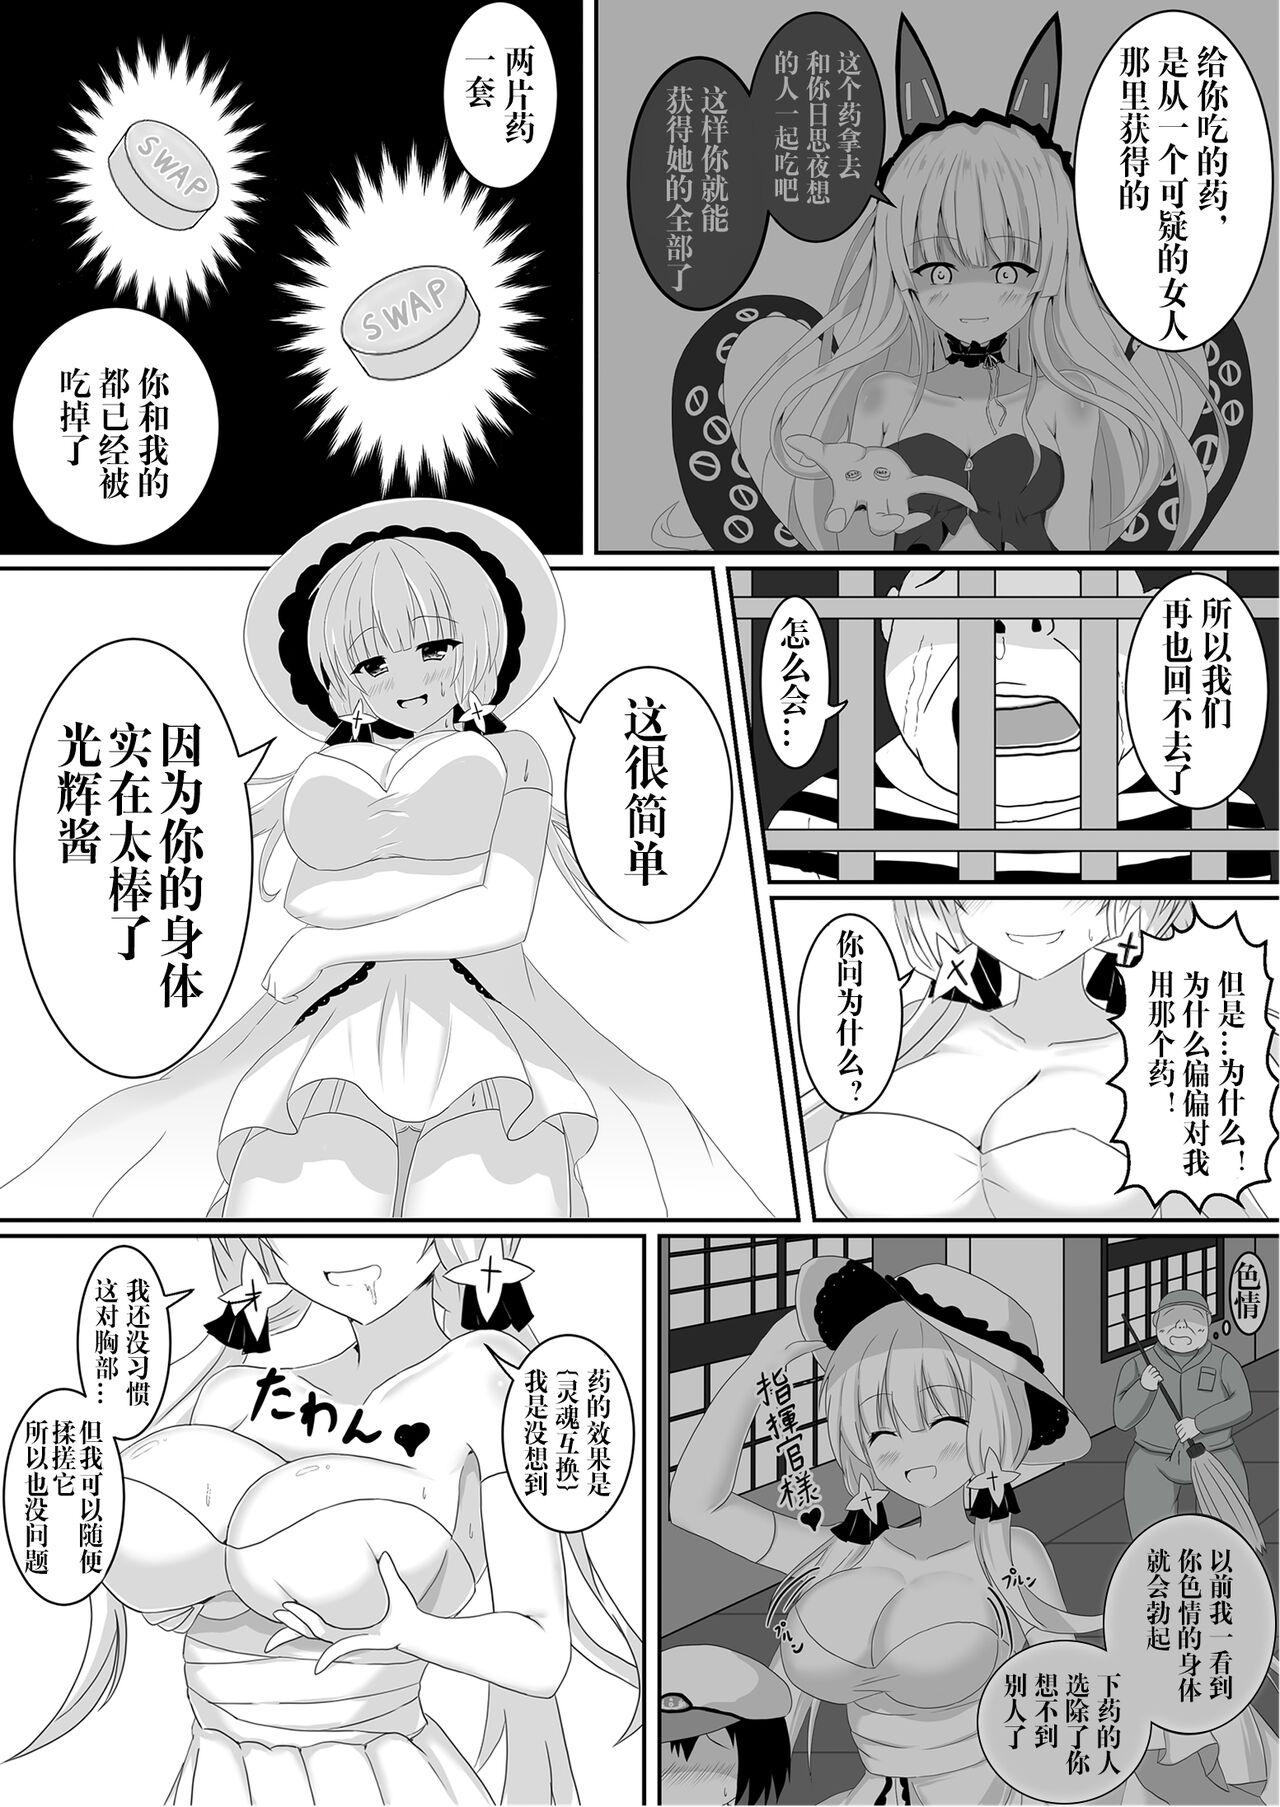 Dick Sucking Irekawari, Hyoui E Fukusuumai 3 - Azur lane Girl Girl - Page 5